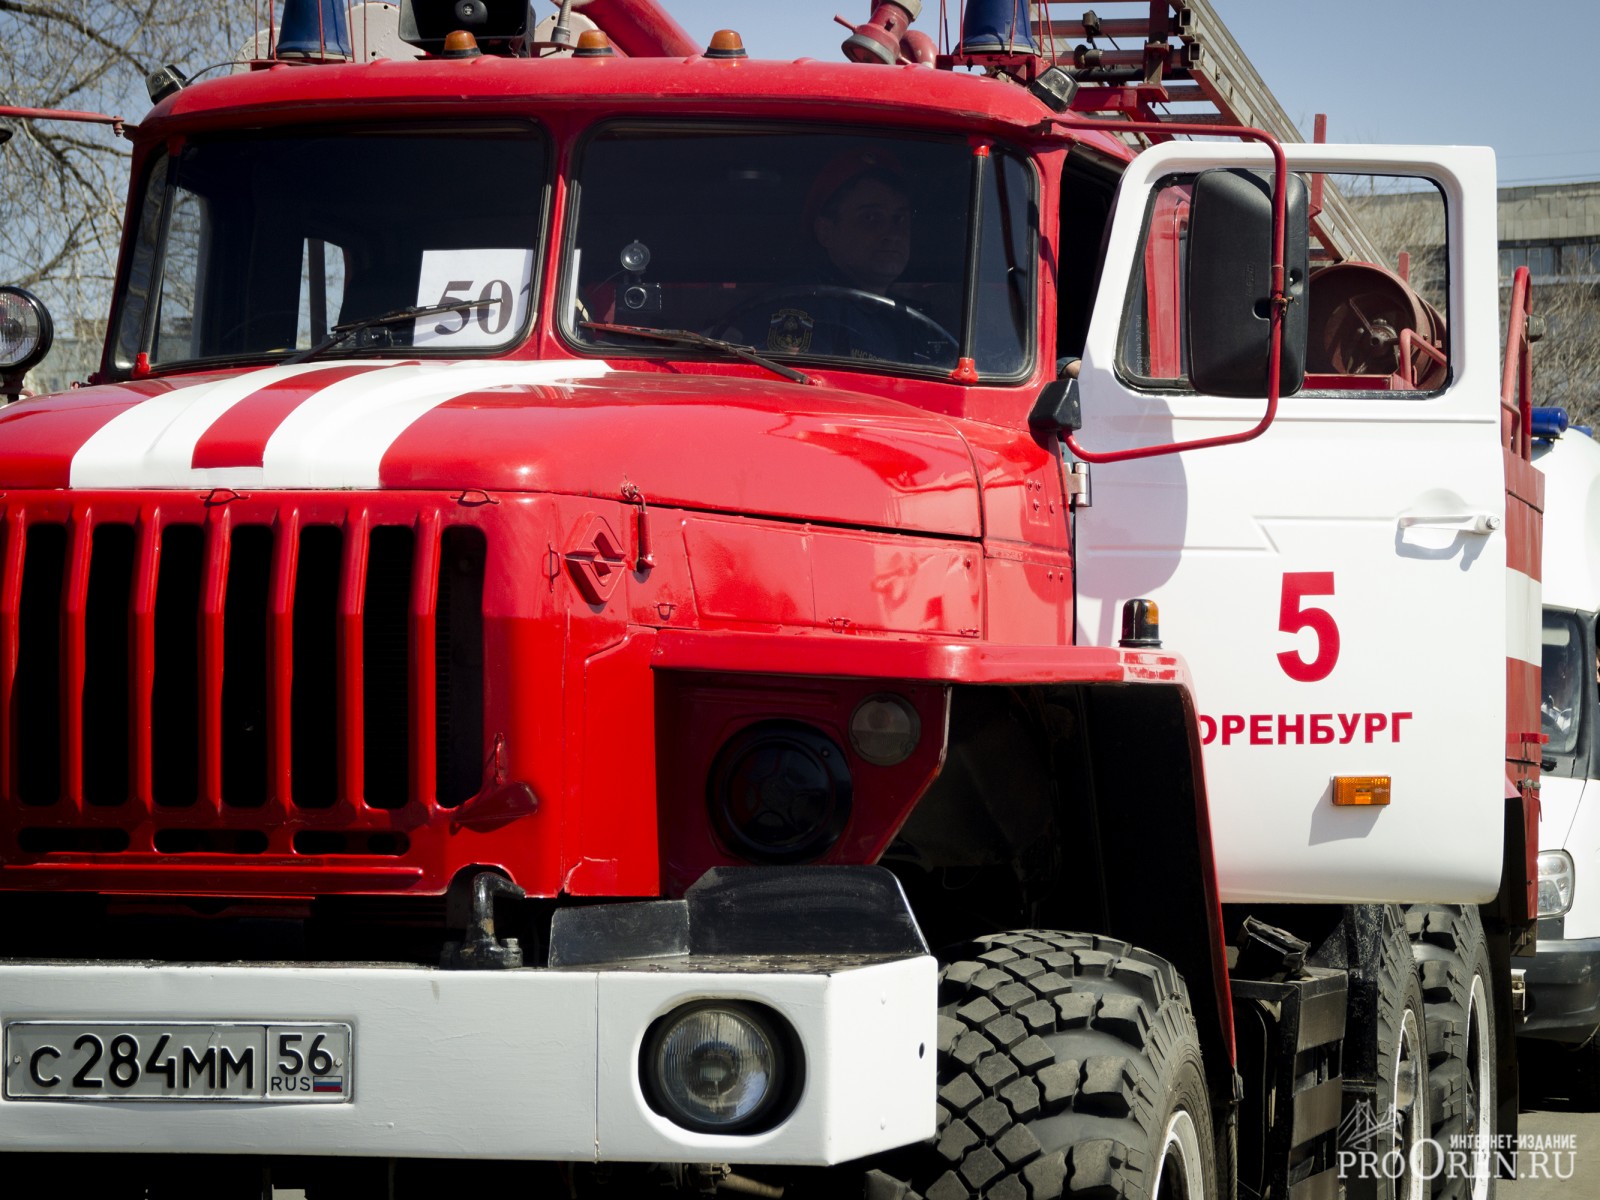 В Оренбурге 30 апреля пройдет автопробег пожарной техники